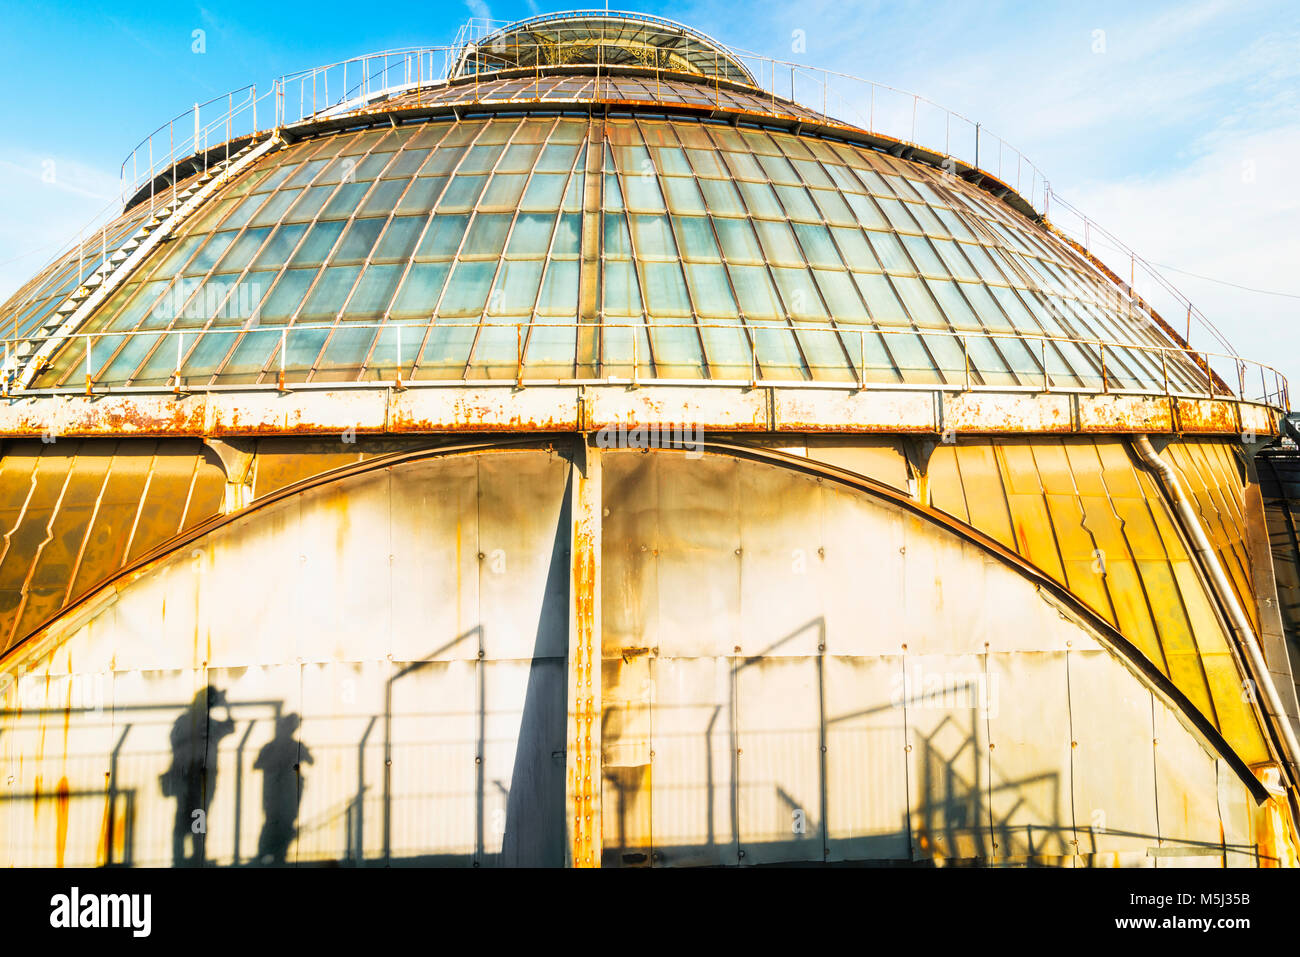 Italia, Milán, cúpula de vidrio de la Galleria Vittorio Emanuele II Foto de stock